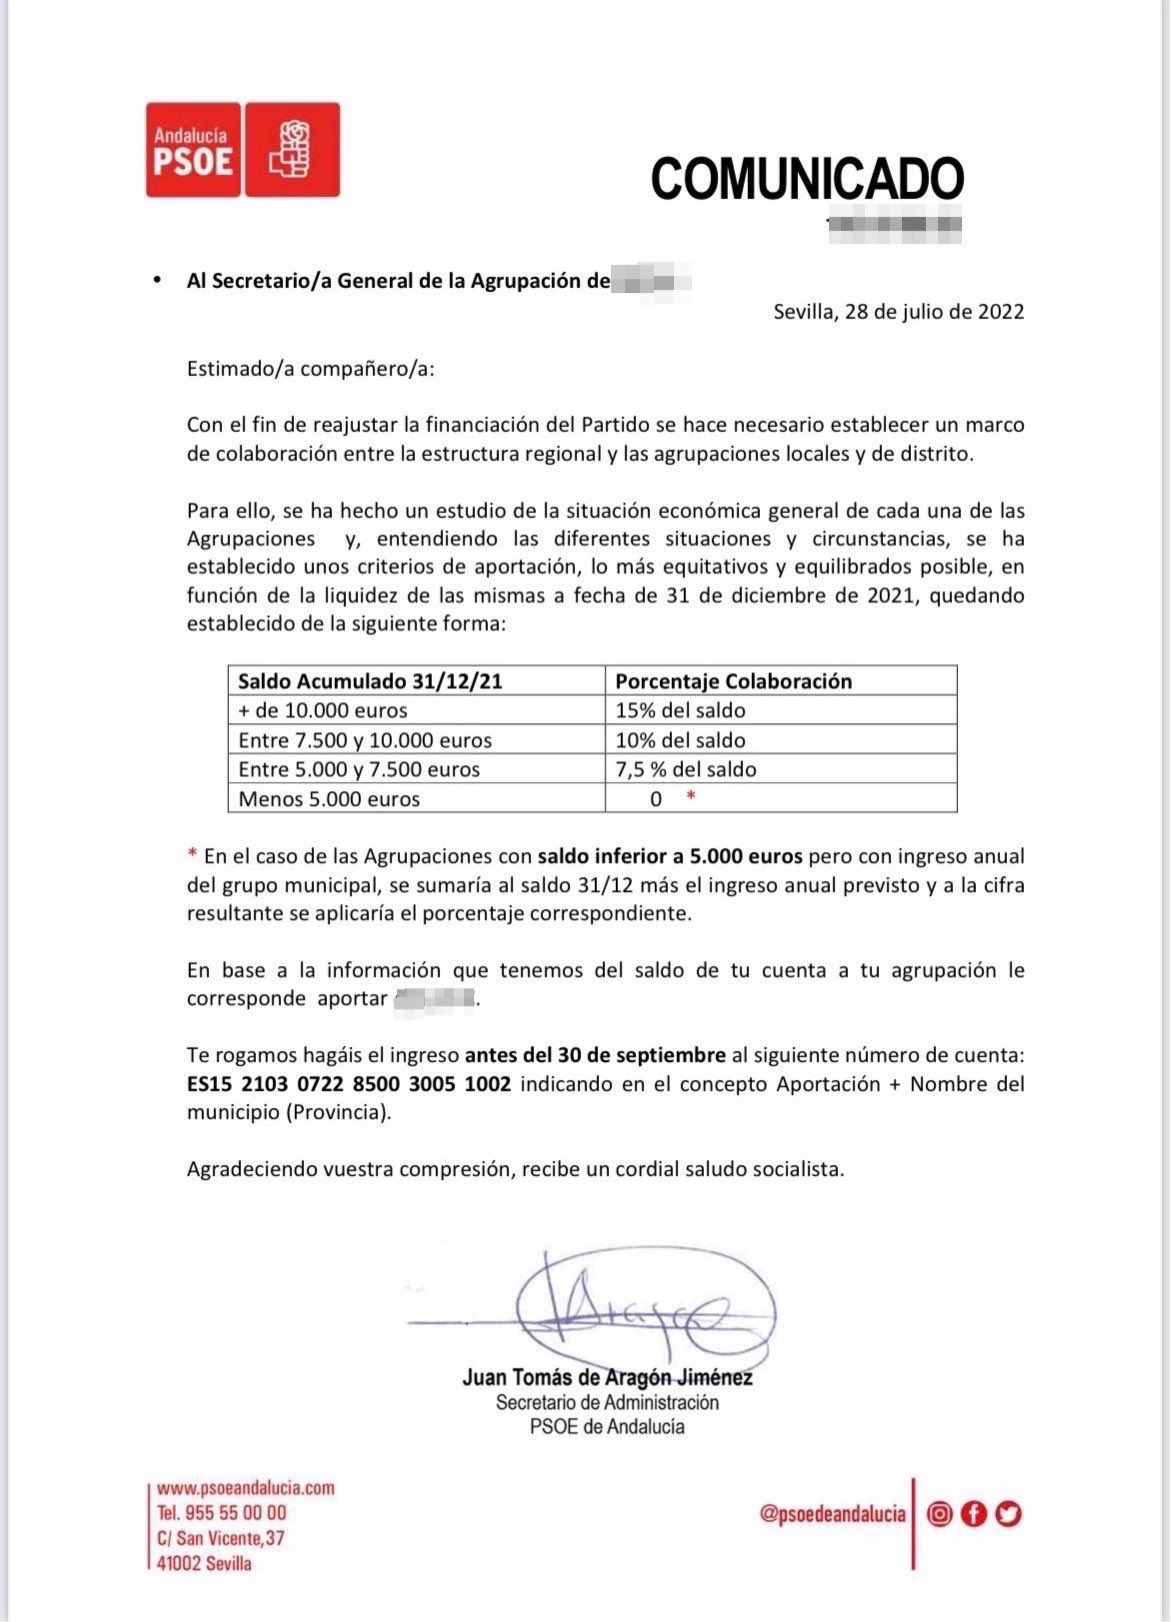 Comunicado del PSOE reclamando dinero a sus agrupaciones. 